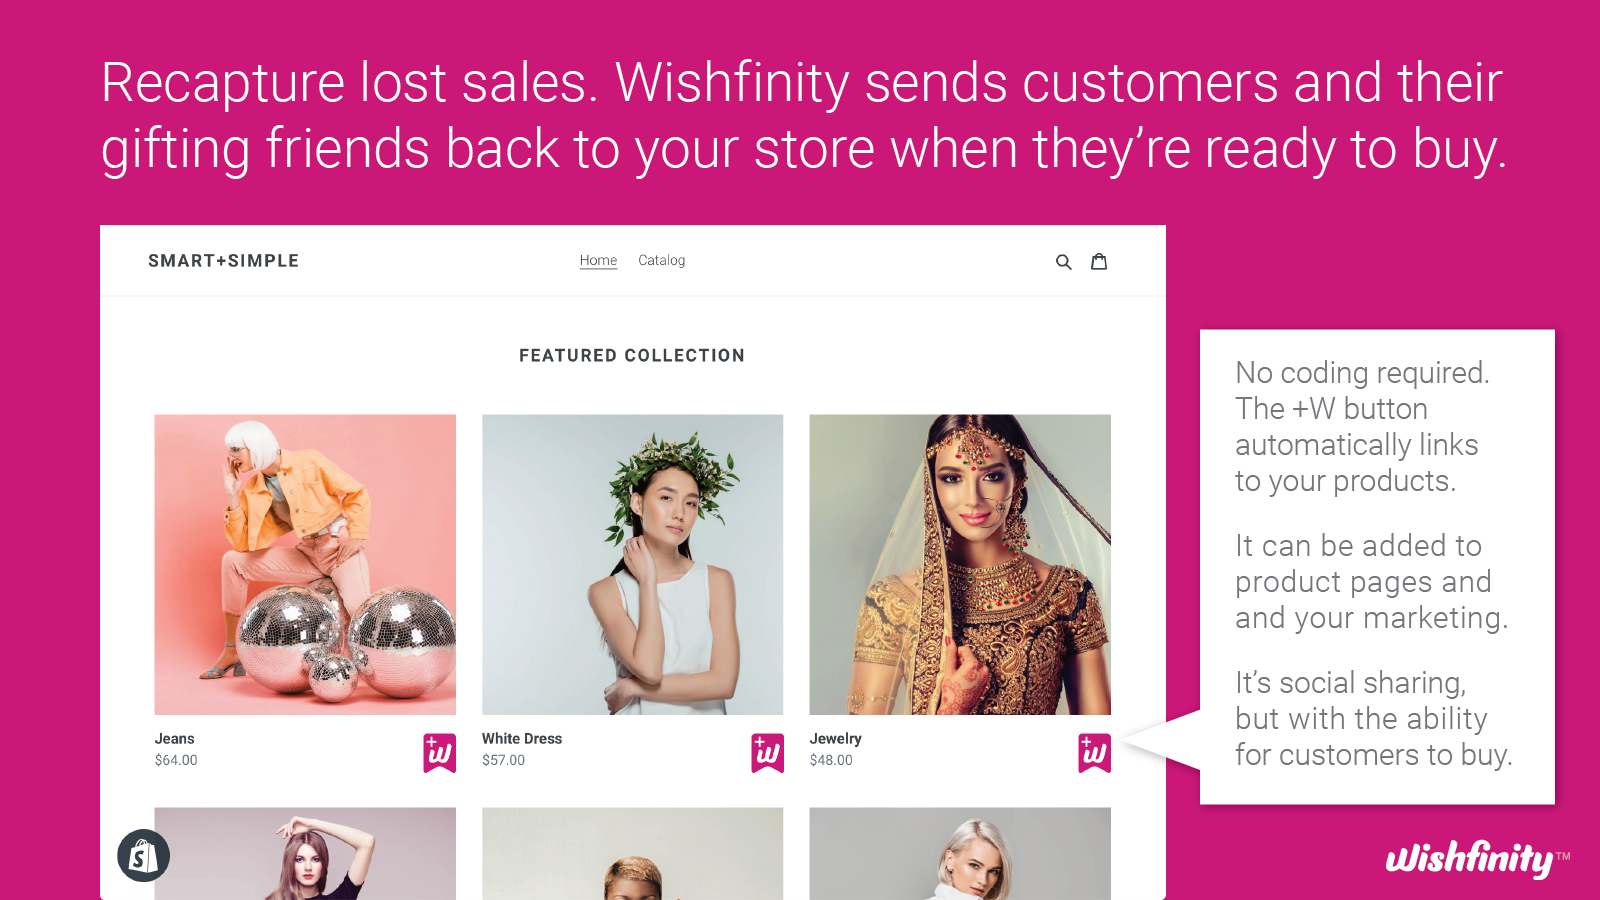 Wishfinity hjälper dig att sälja till gåvogivare och fler konsumenter